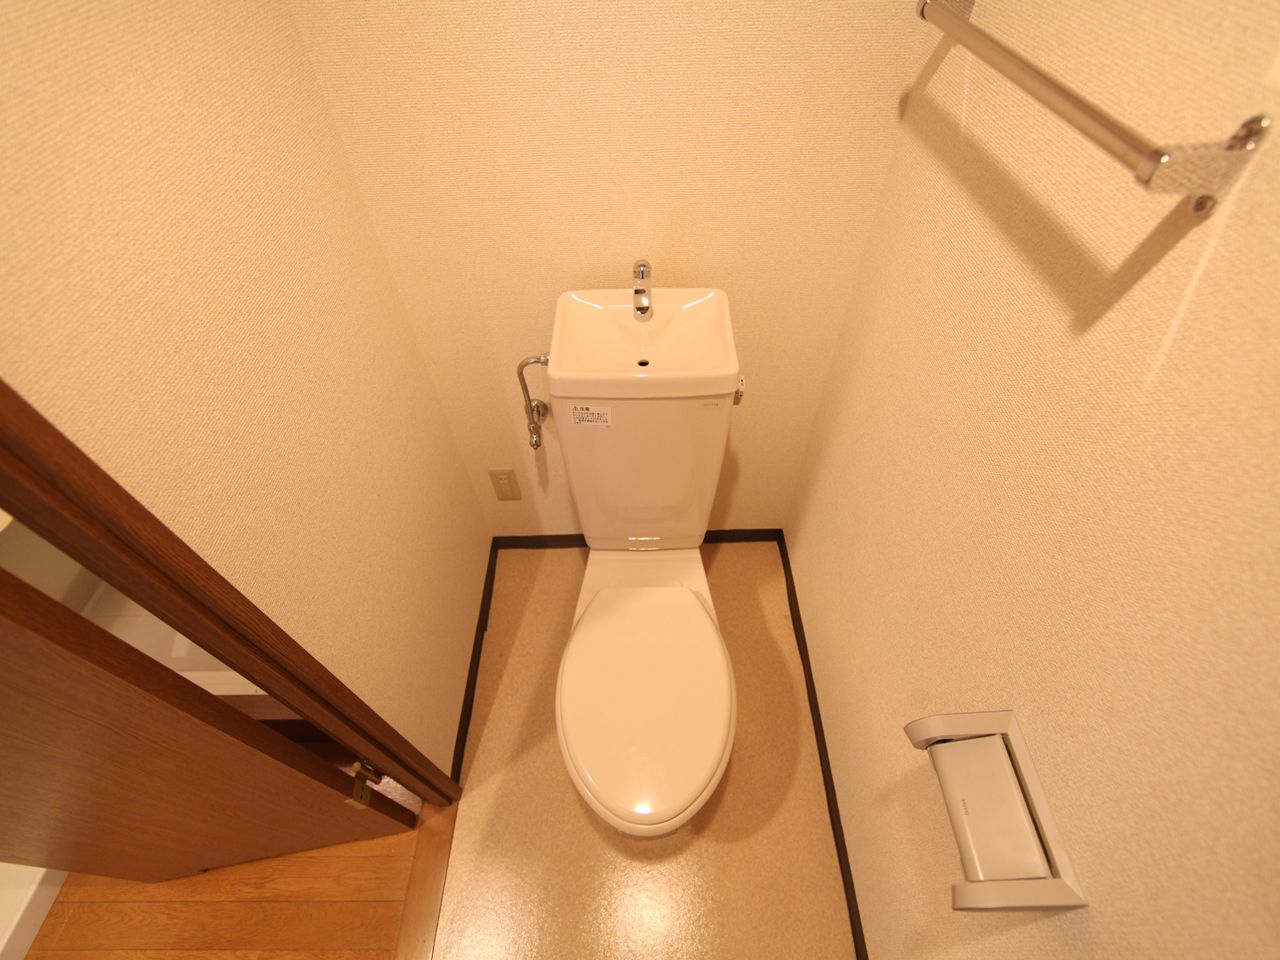 Toilet. toilet With shelf